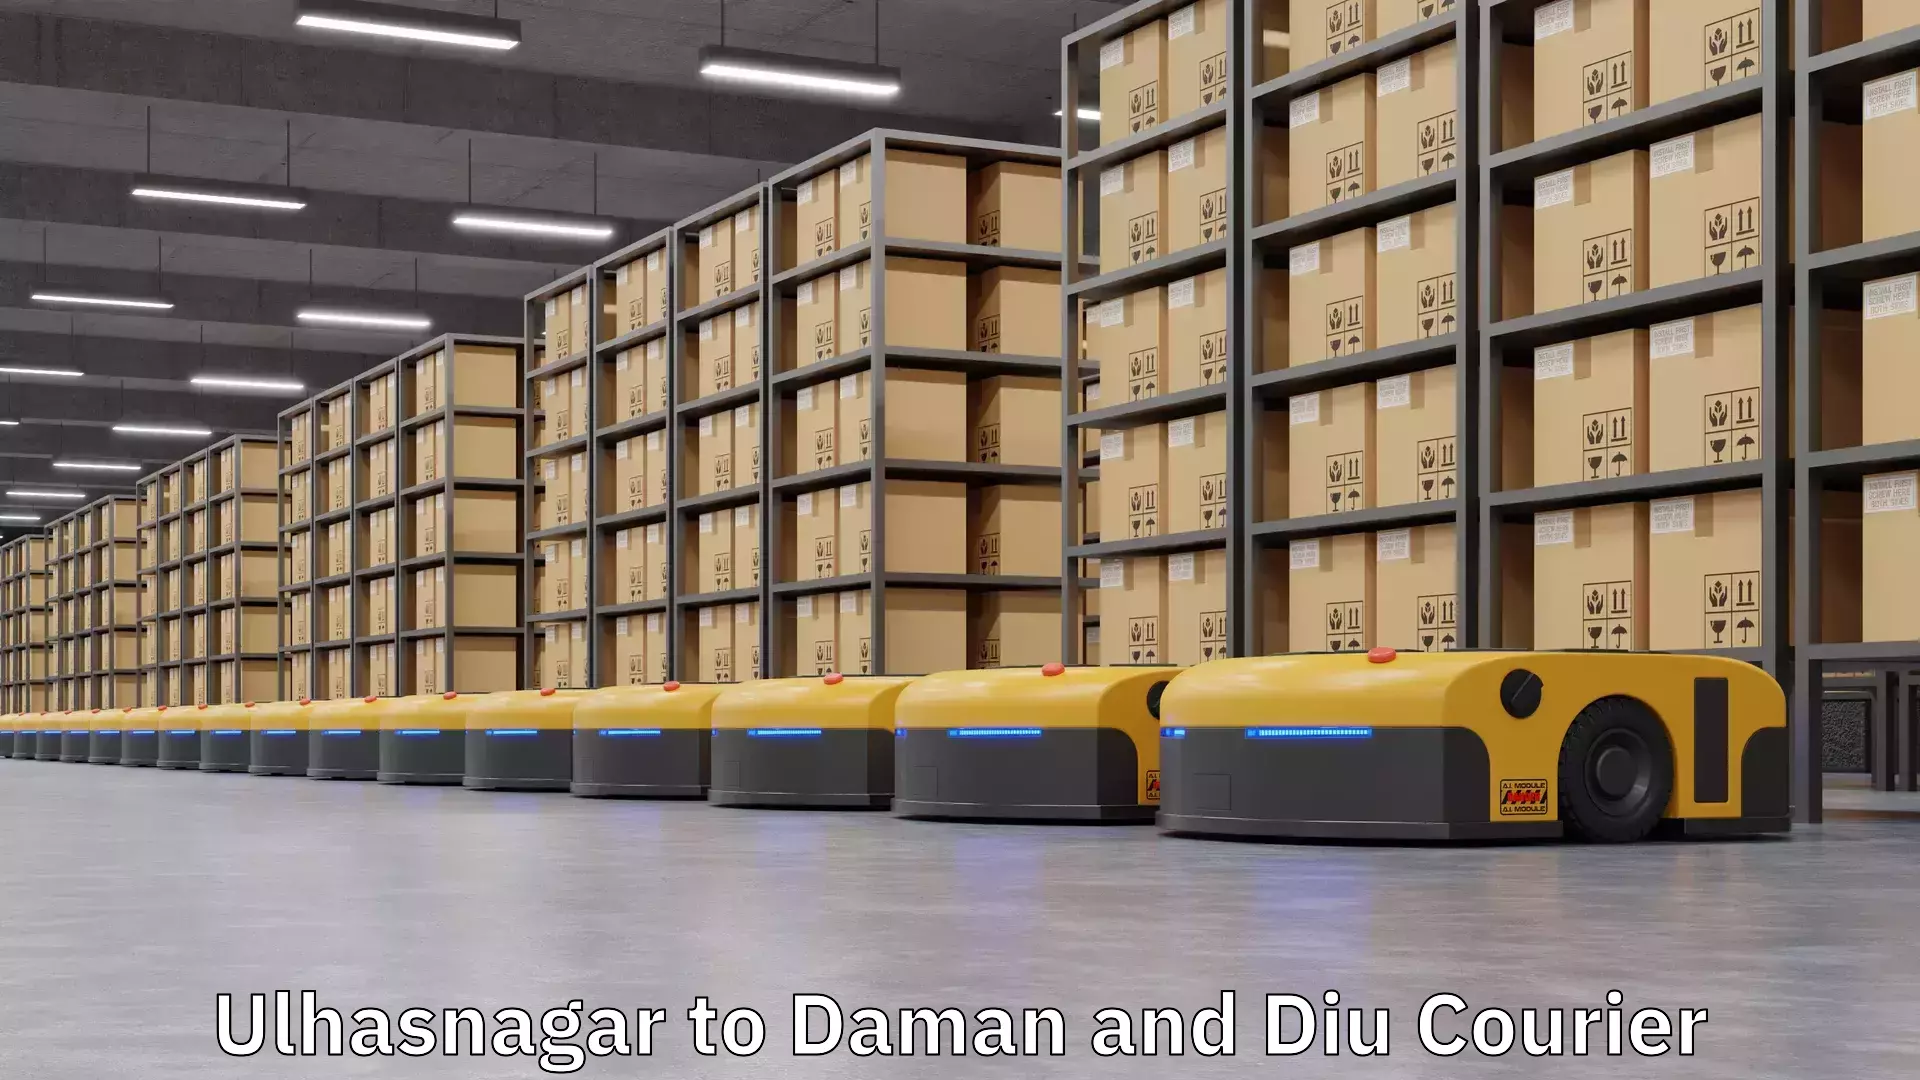 Logistics service provider Ulhasnagar to Daman and Diu